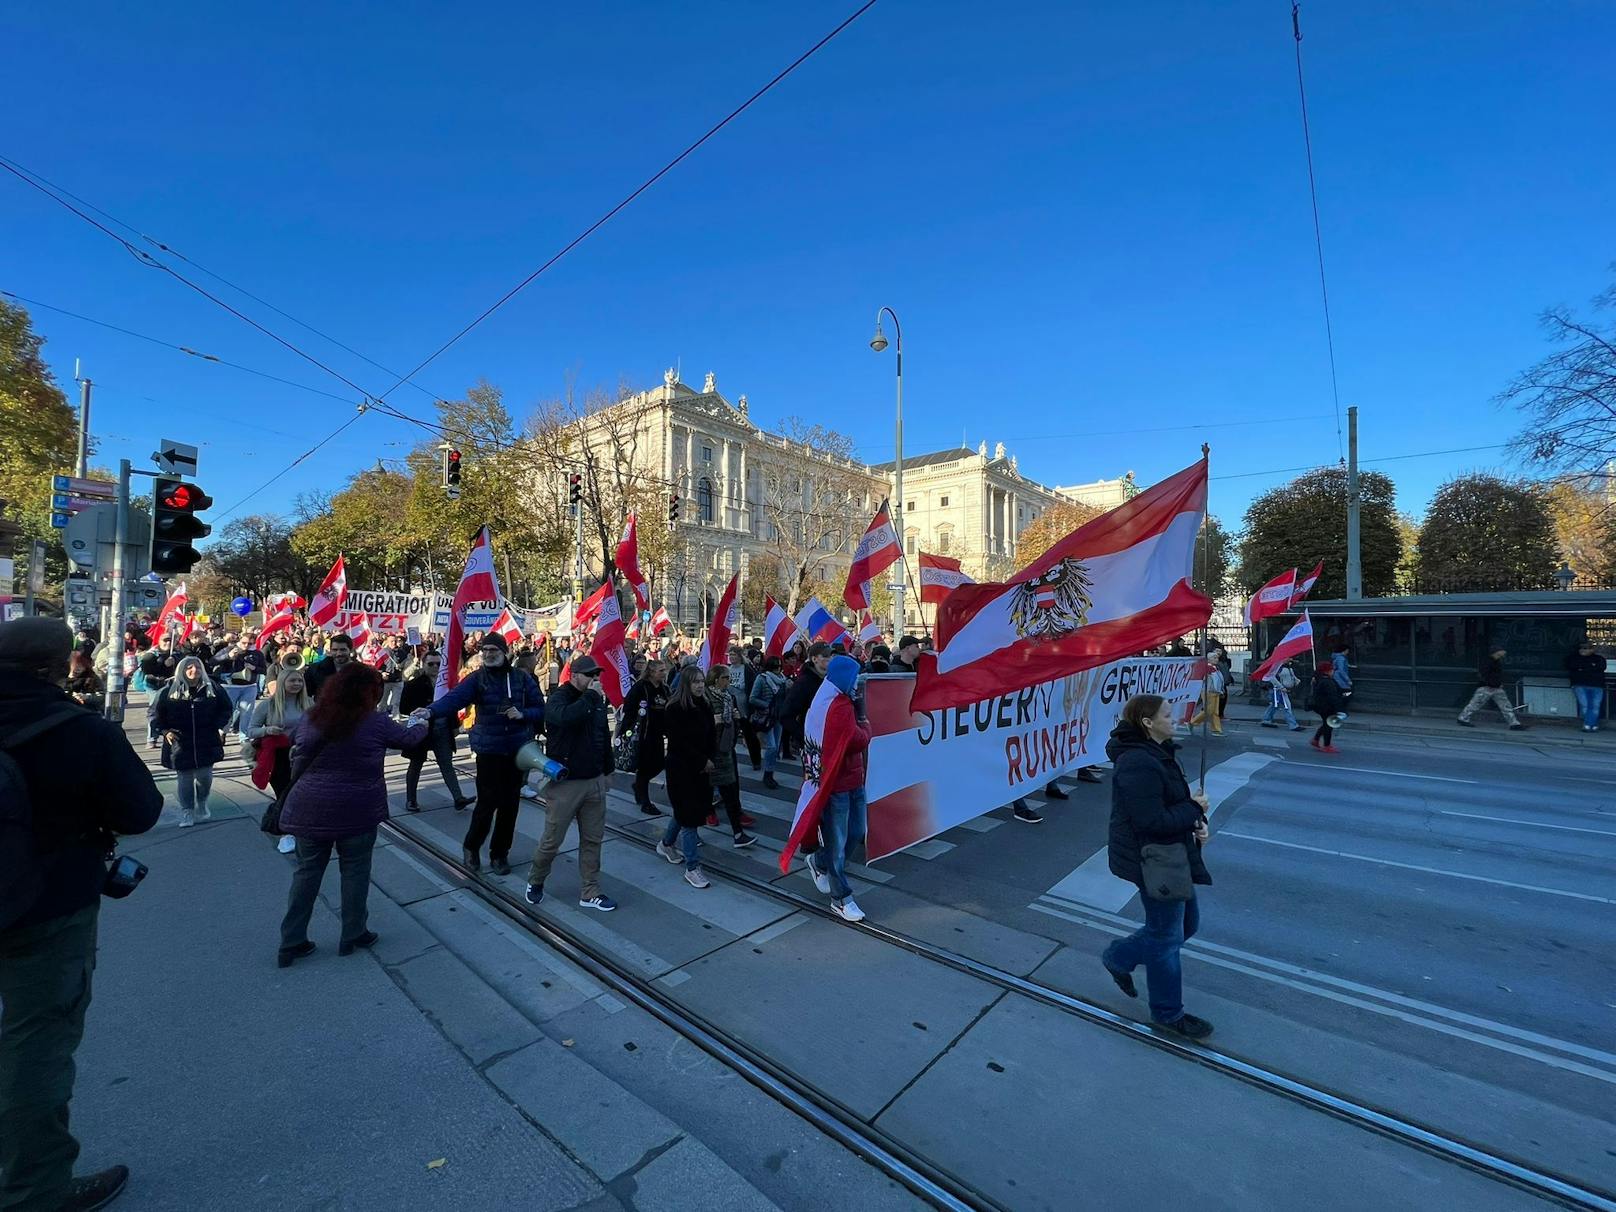 In der Wiener Innenstadt kommt es am Sonntagnachmittag zu einer Demonstration "gegen Massenmigration" – tausende Menschen gehen auf die Straße.